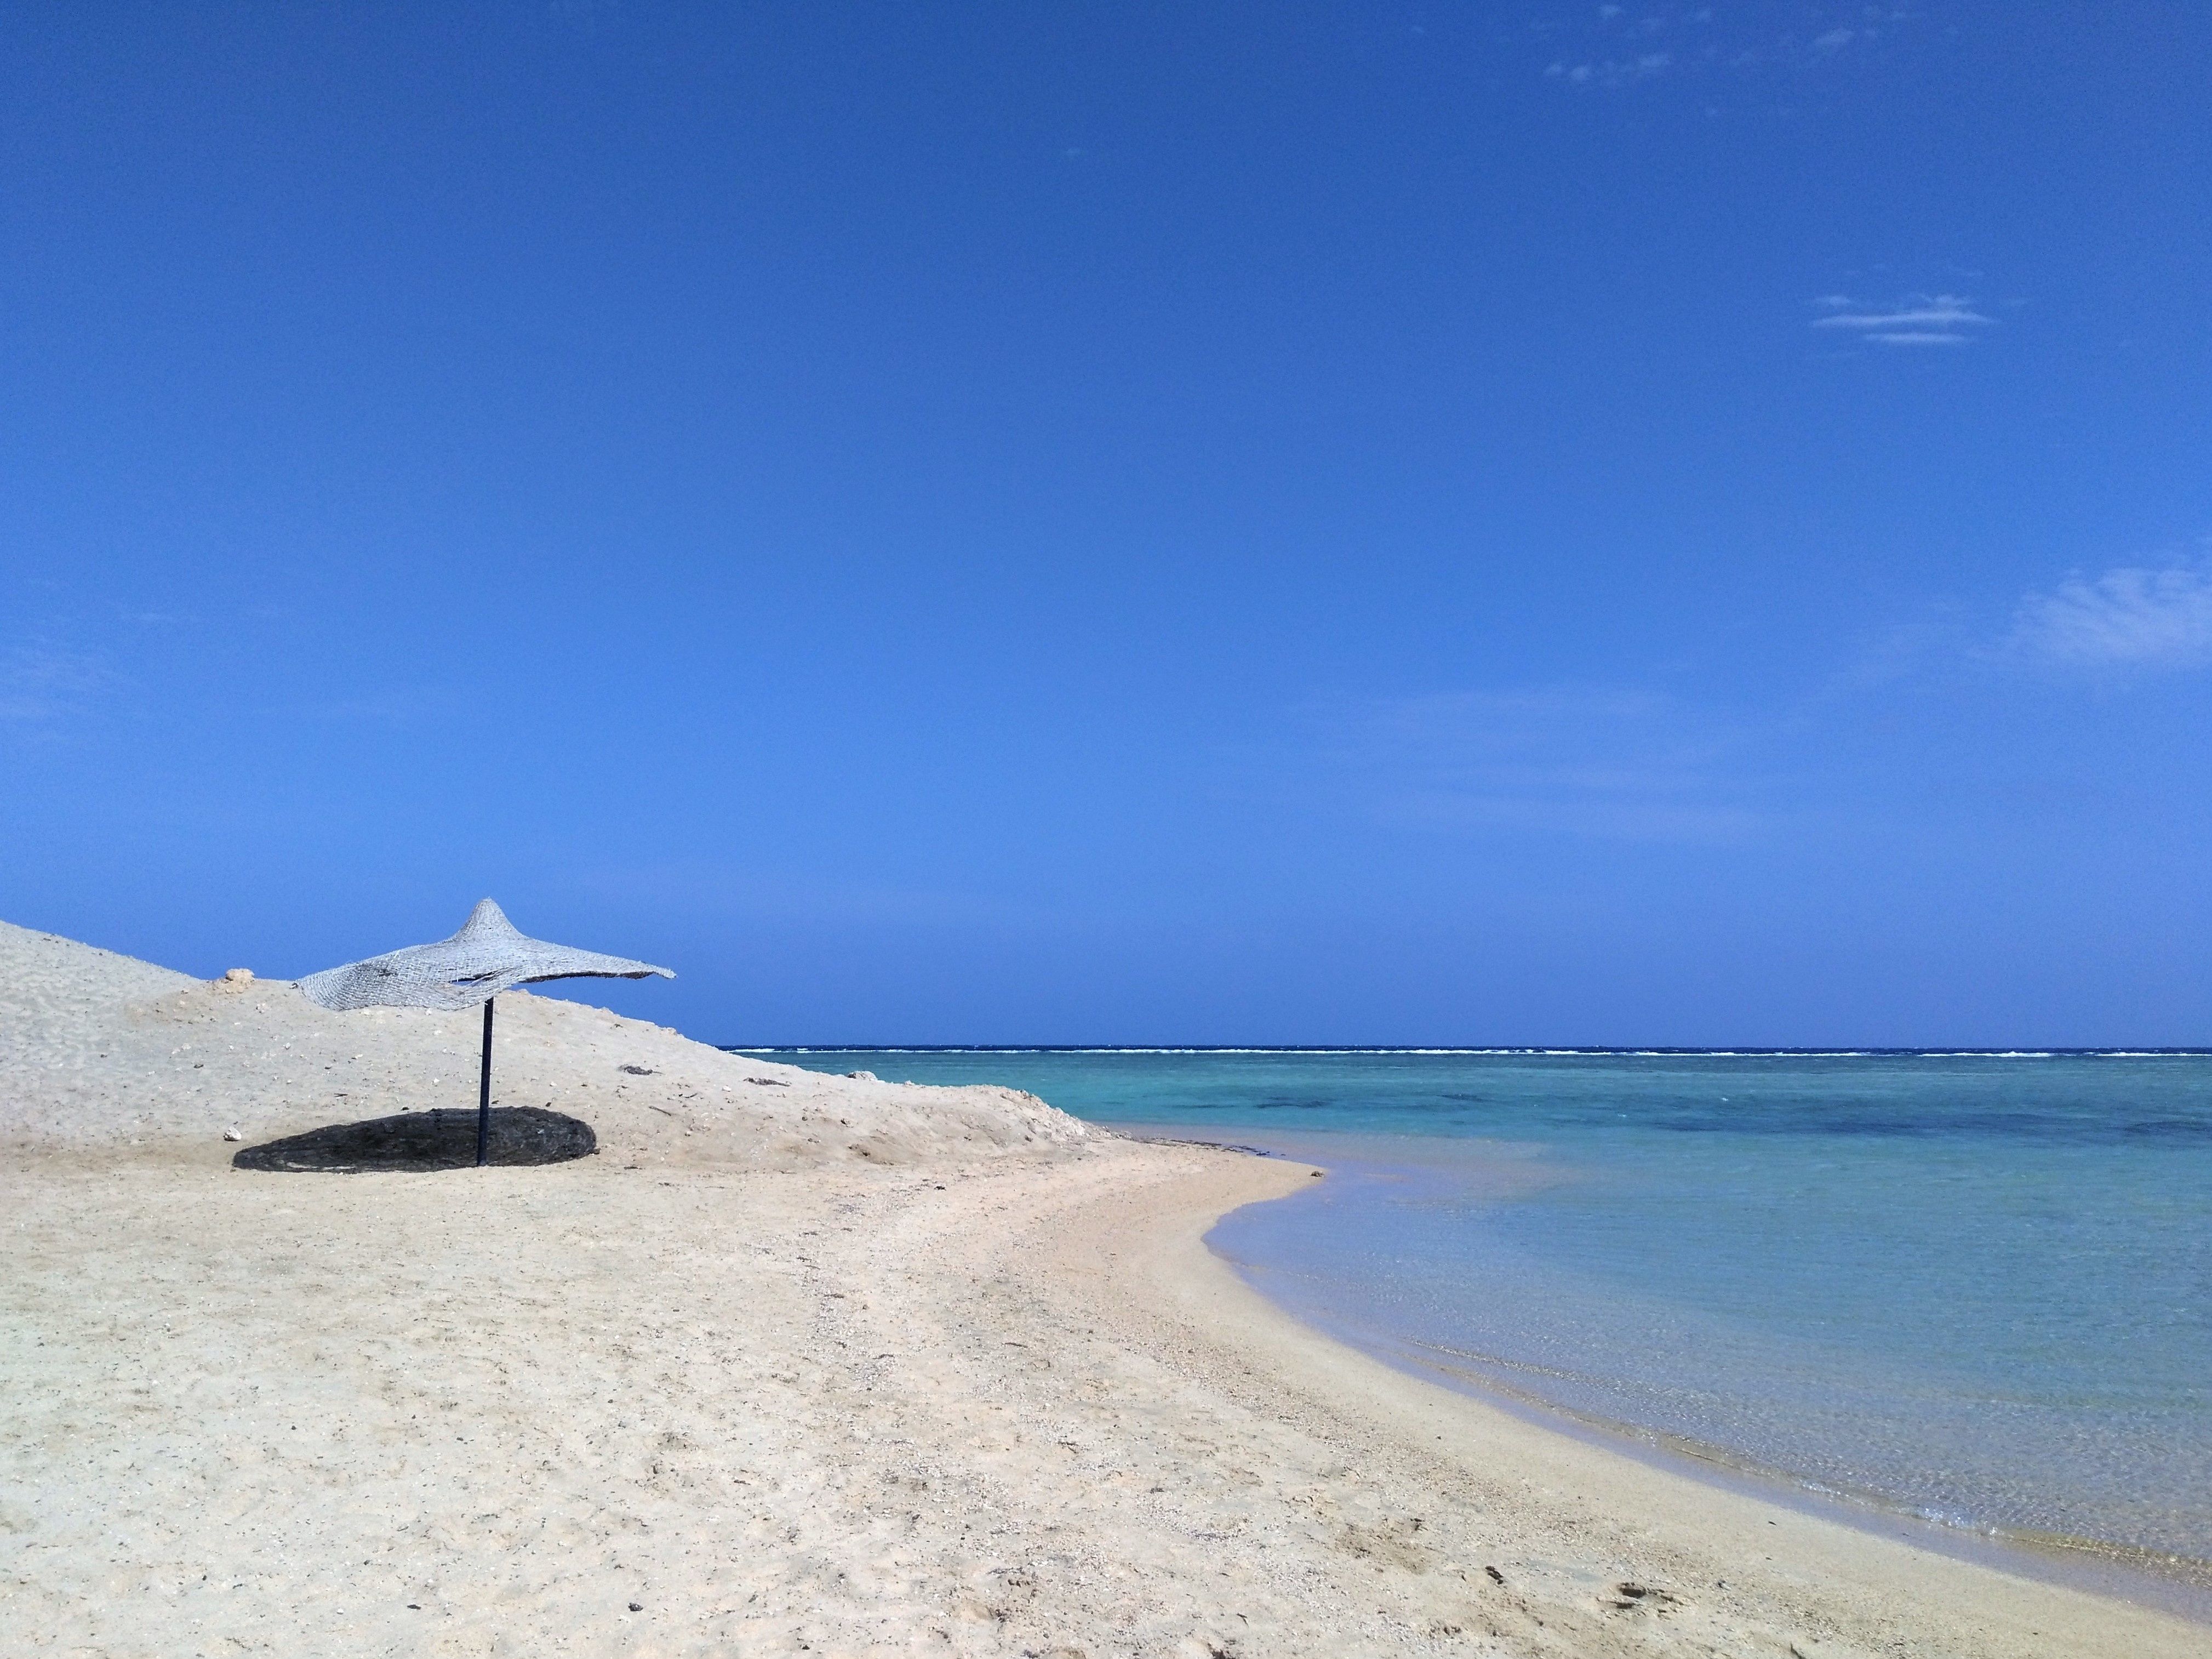 Solo umbrella on white sand beach in El Quseir, Egypt.